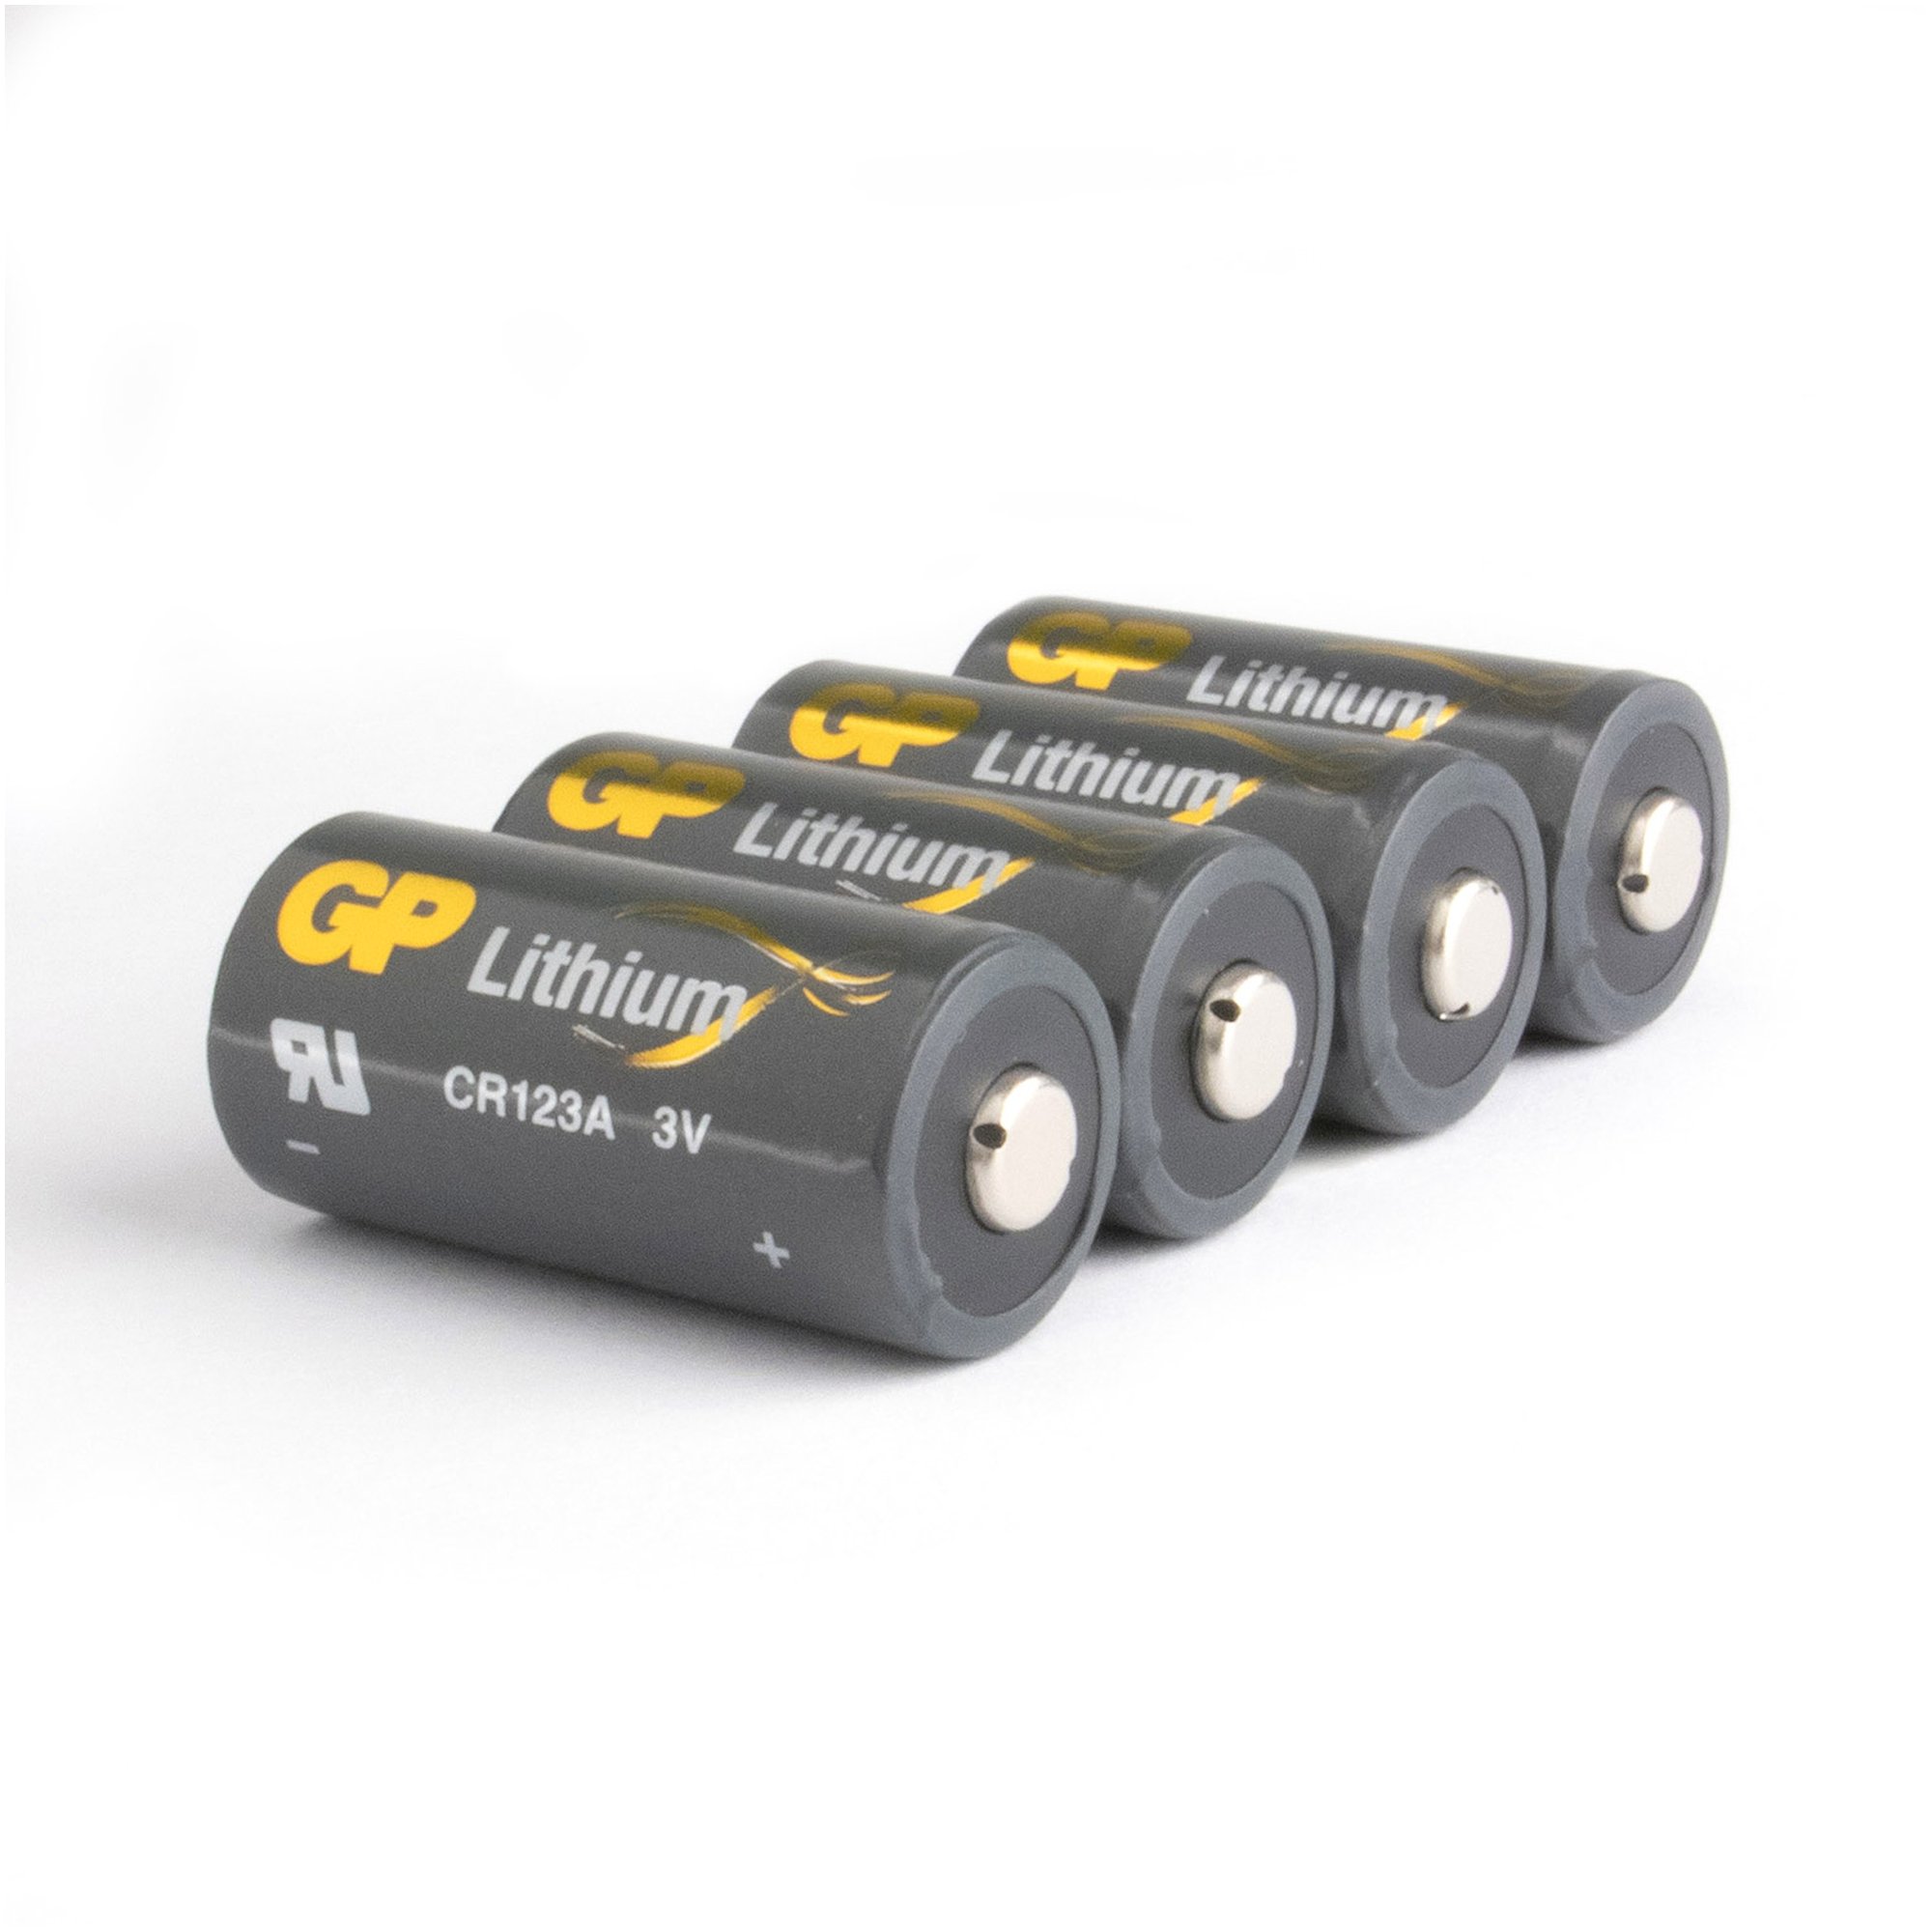 CR123A Batterie GP Lithium 4 Stück